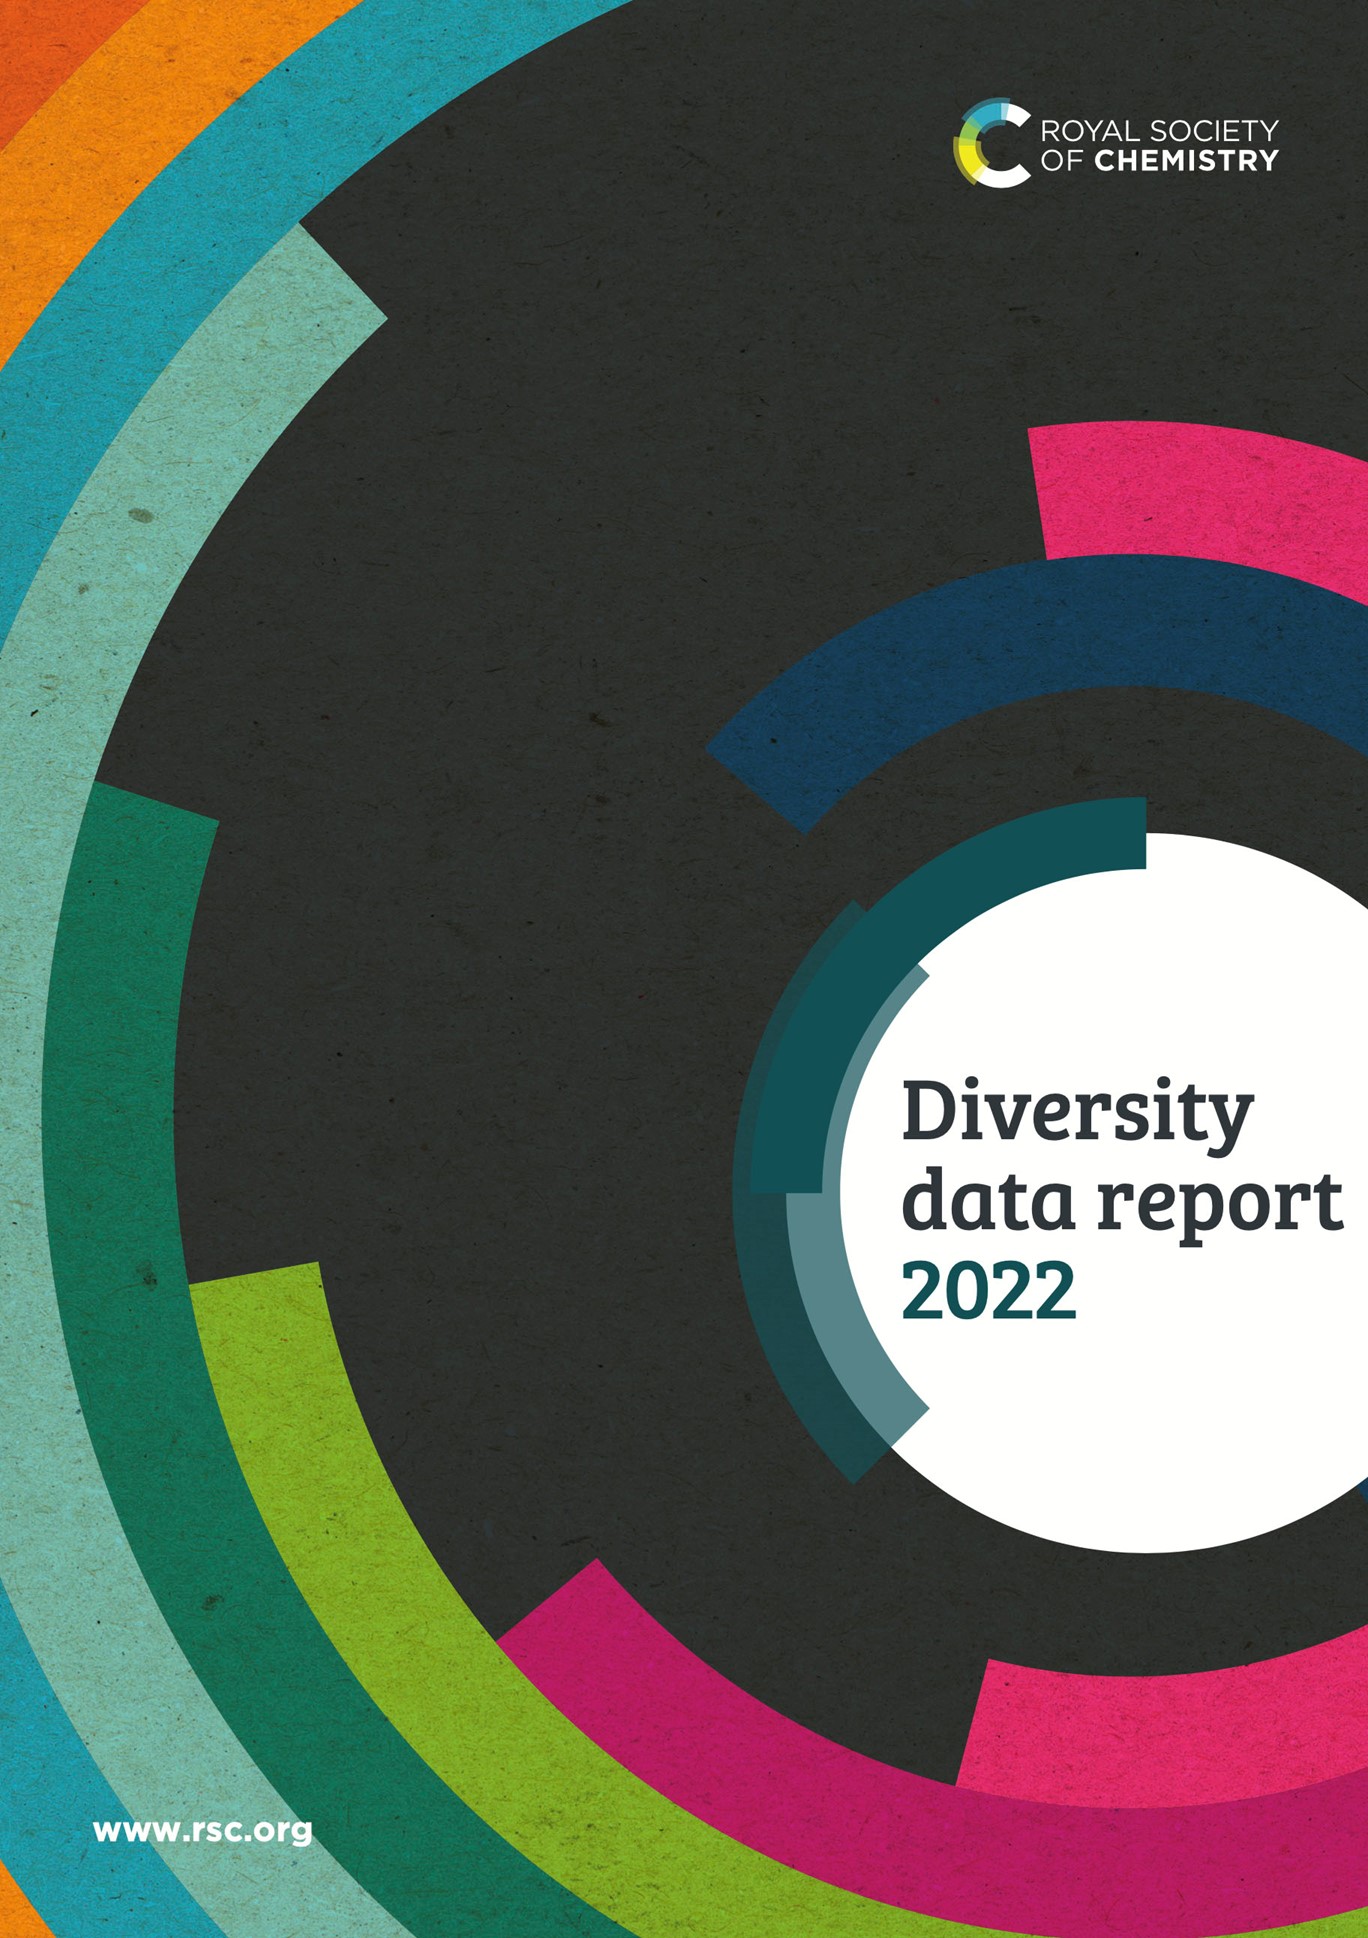 Diversity Data cover 2022.jpg